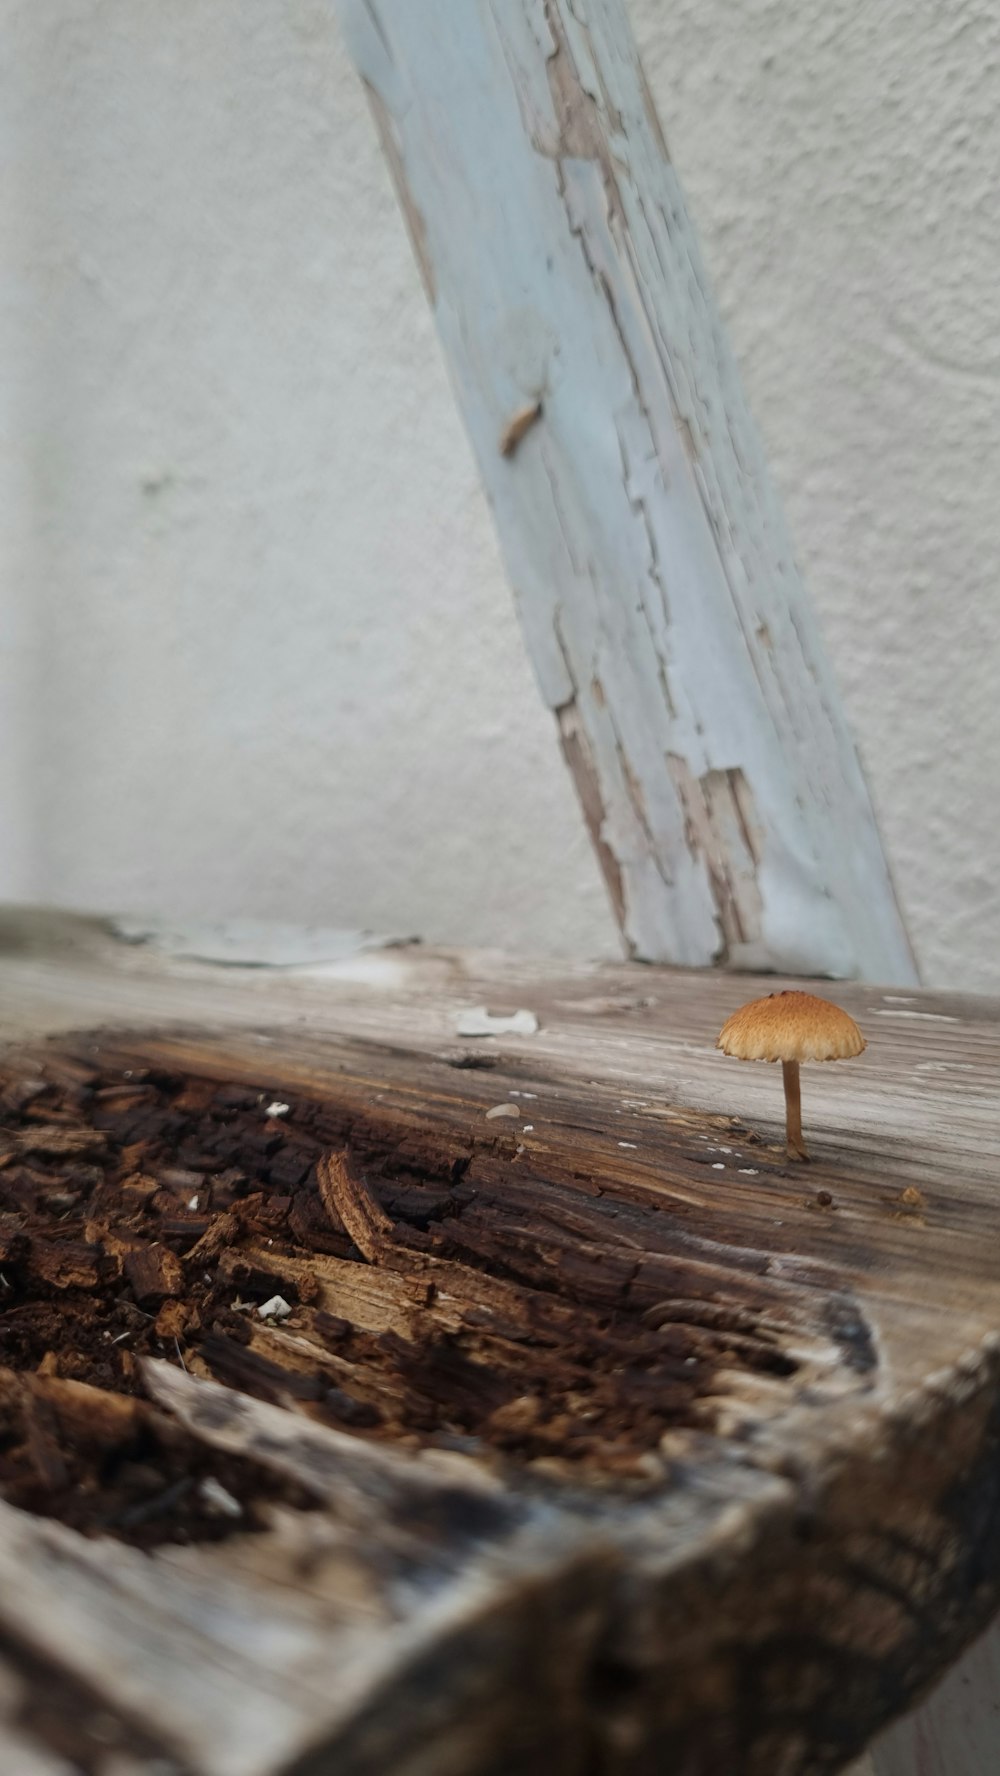 나무 테이블 위에 앉아있는 버섯